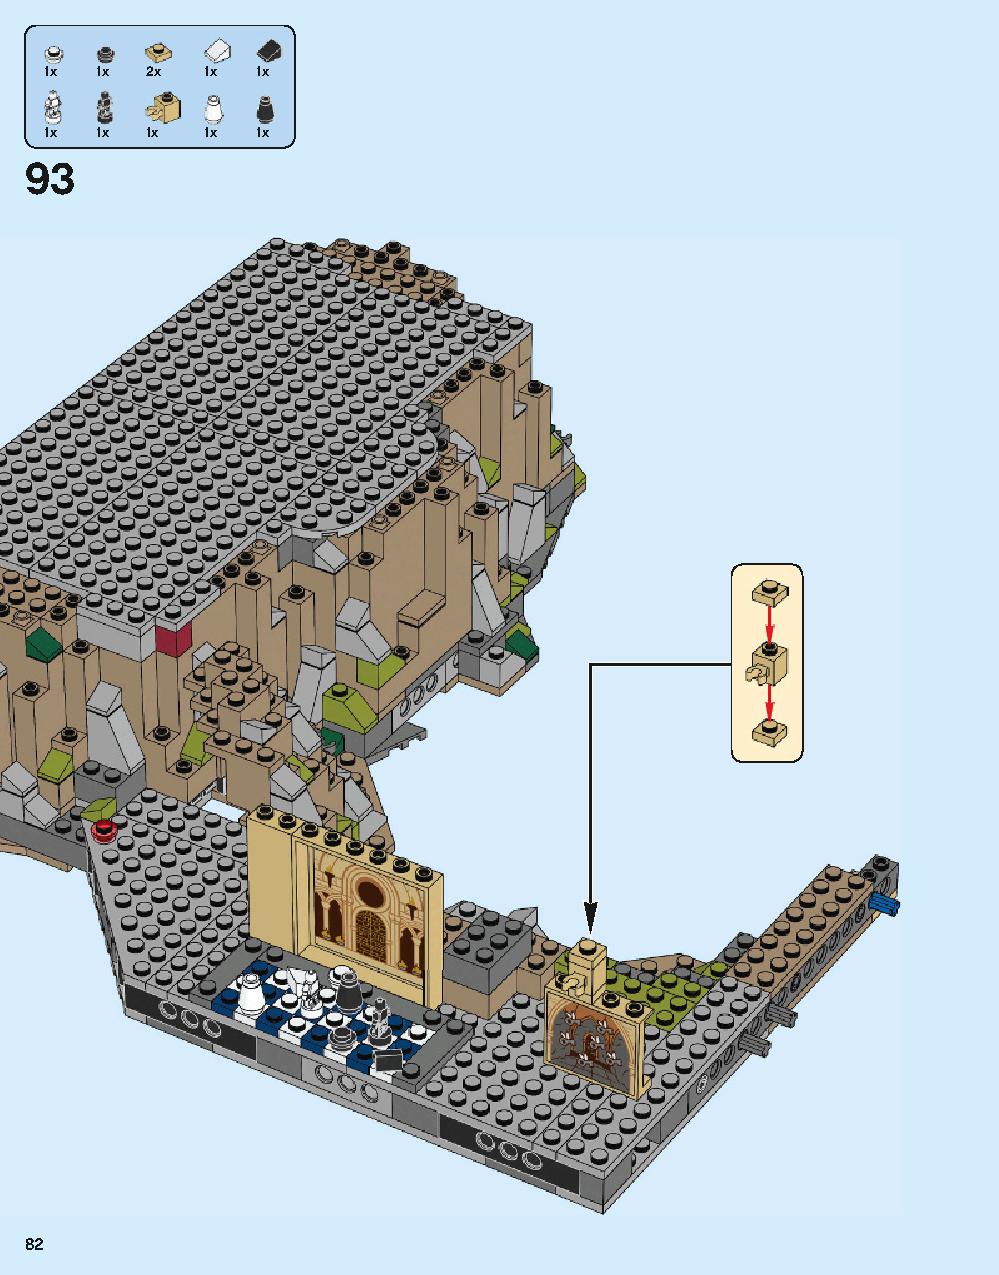 ホグワーツ城 71043 レゴの商品情報 レゴの説明書・組立方法 82 page